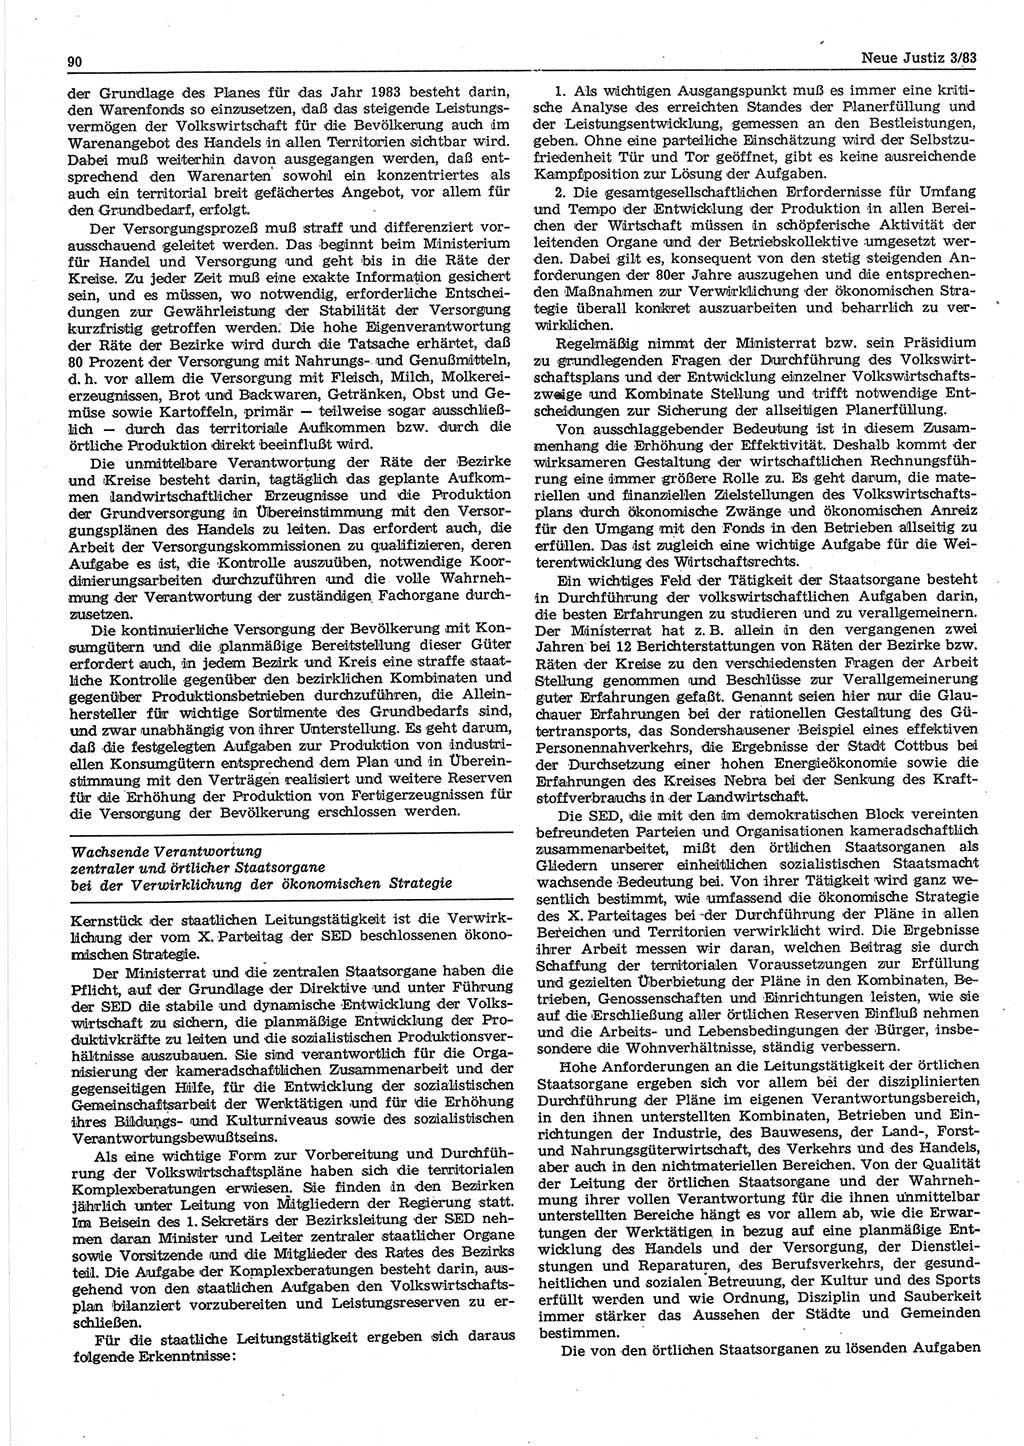 Neue Justiz (NJ), Zeitschrift für sozialistisches Recht und Gesetzlichkeit [Deutsche Demokratische Republik (DDR)], 37. Jahrgang 1983, Seite 90 (NJ DDR 1983, S. 90)